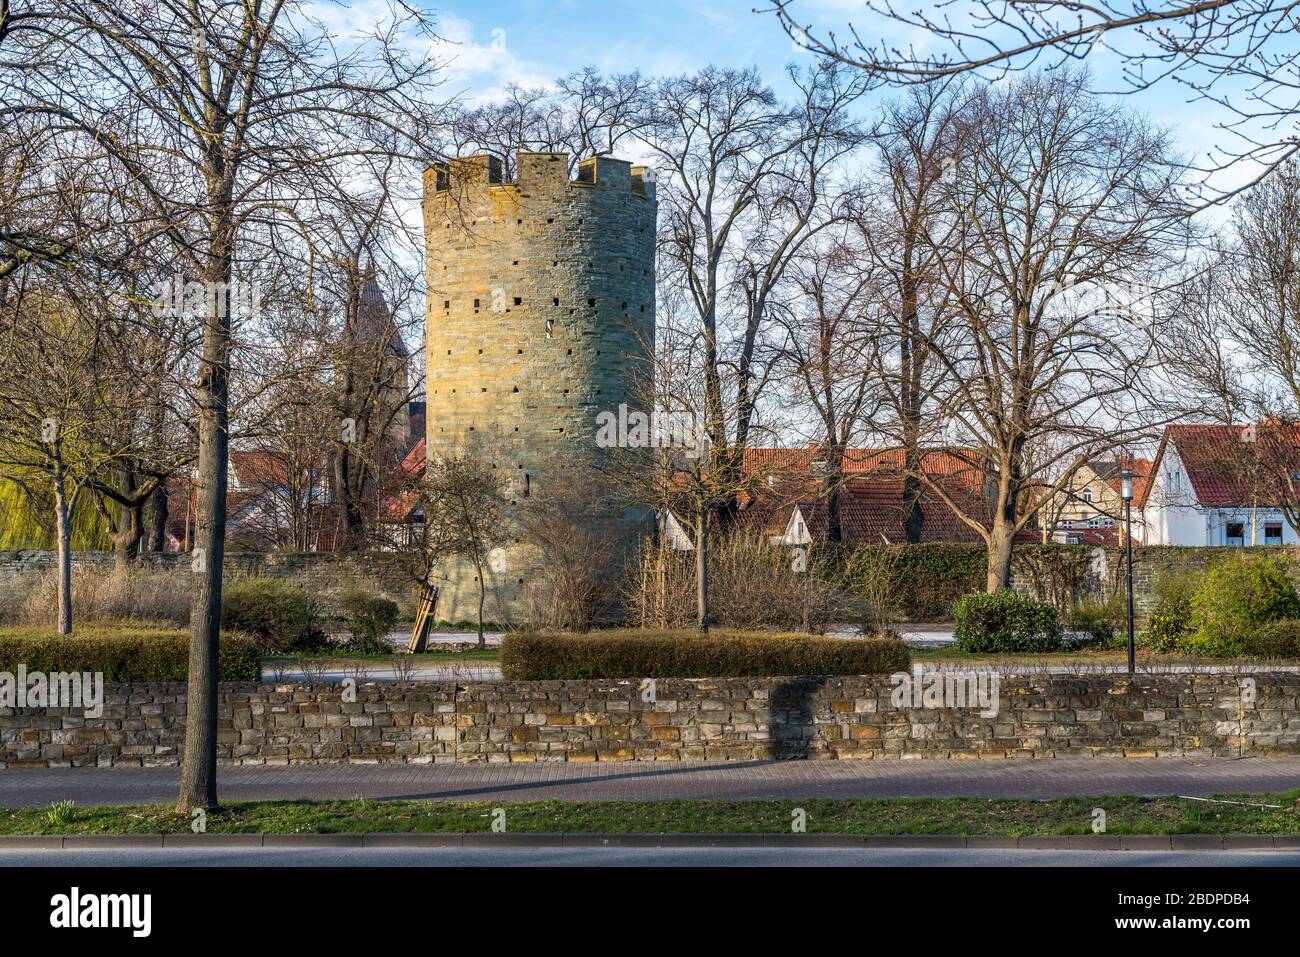 Der historische Kattenturm in Soest, Nordrhein-Westfalen, Deutschland, historischer Stadtmauerturm Kattenturm in Soest, Nordrhein-Westfalen, Ger Stockfoto